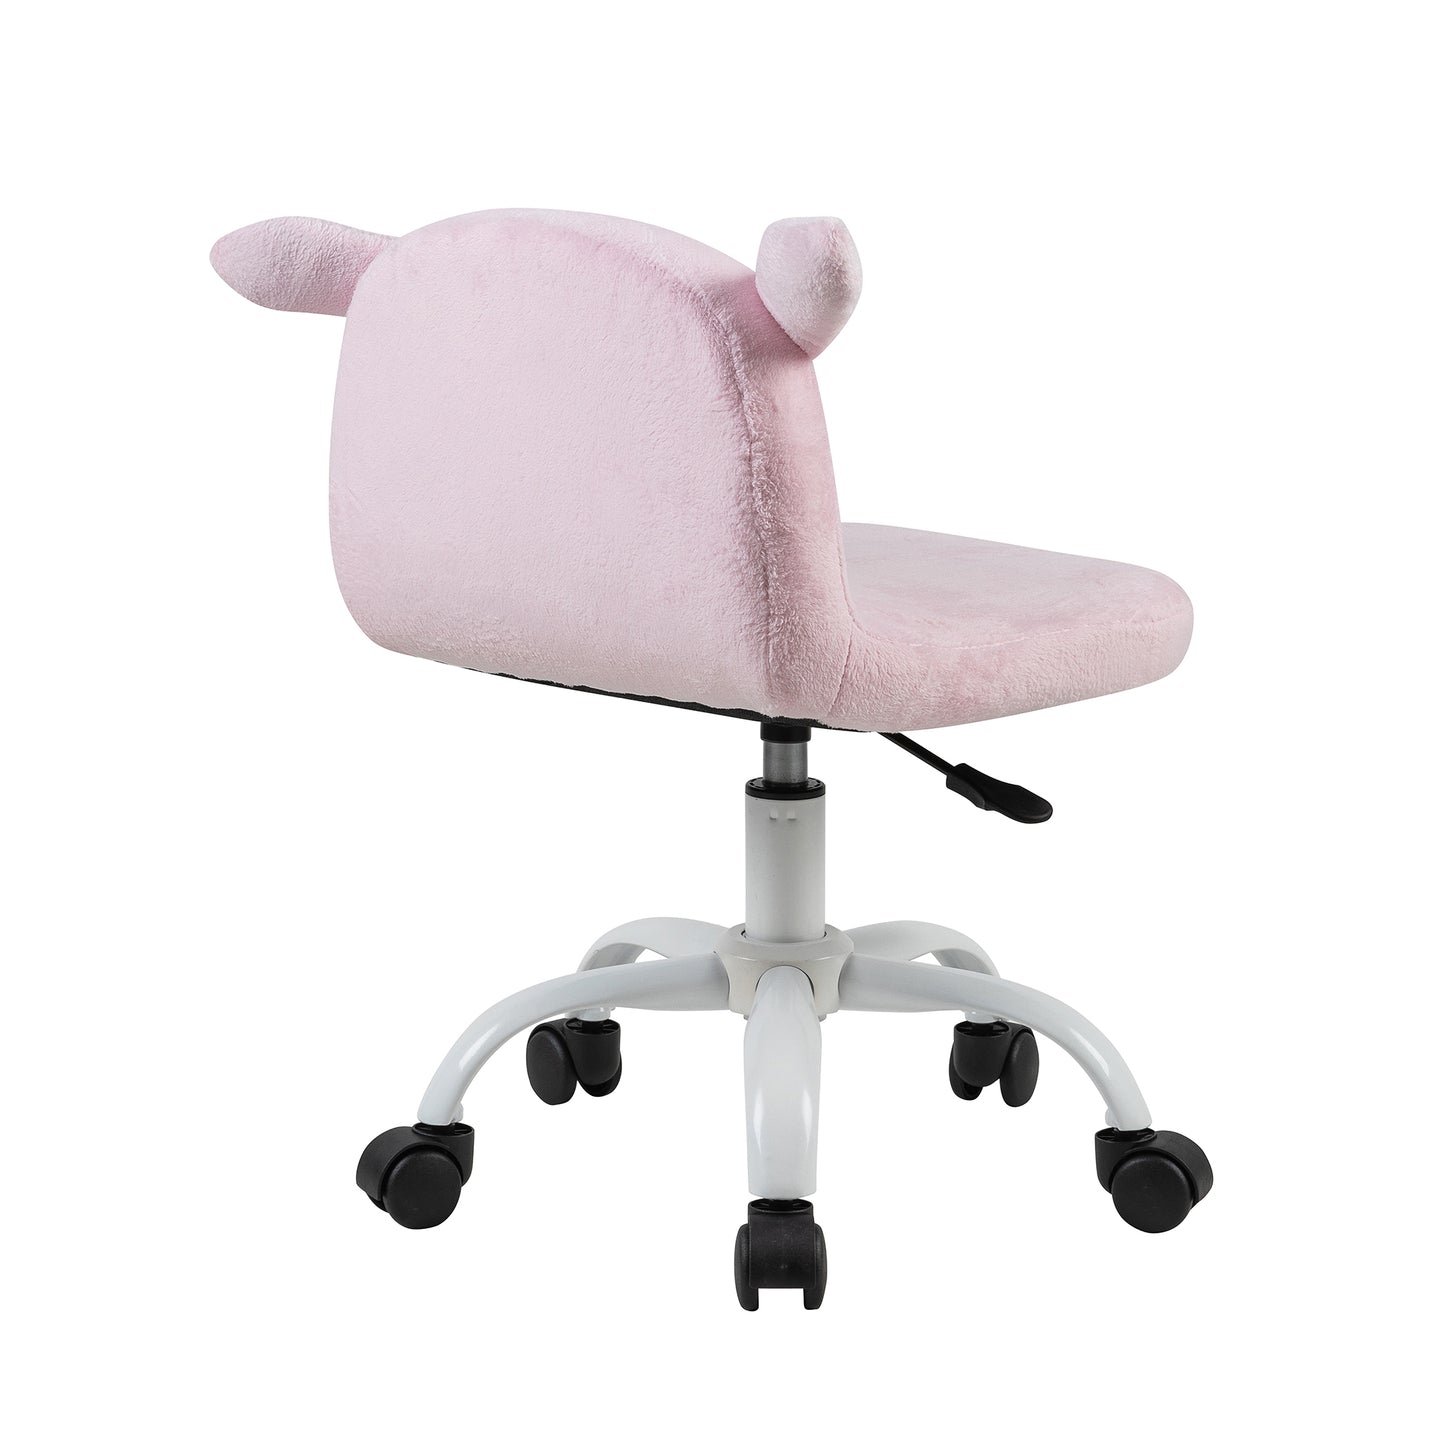 Kids Desk Chair , Pink Piggy